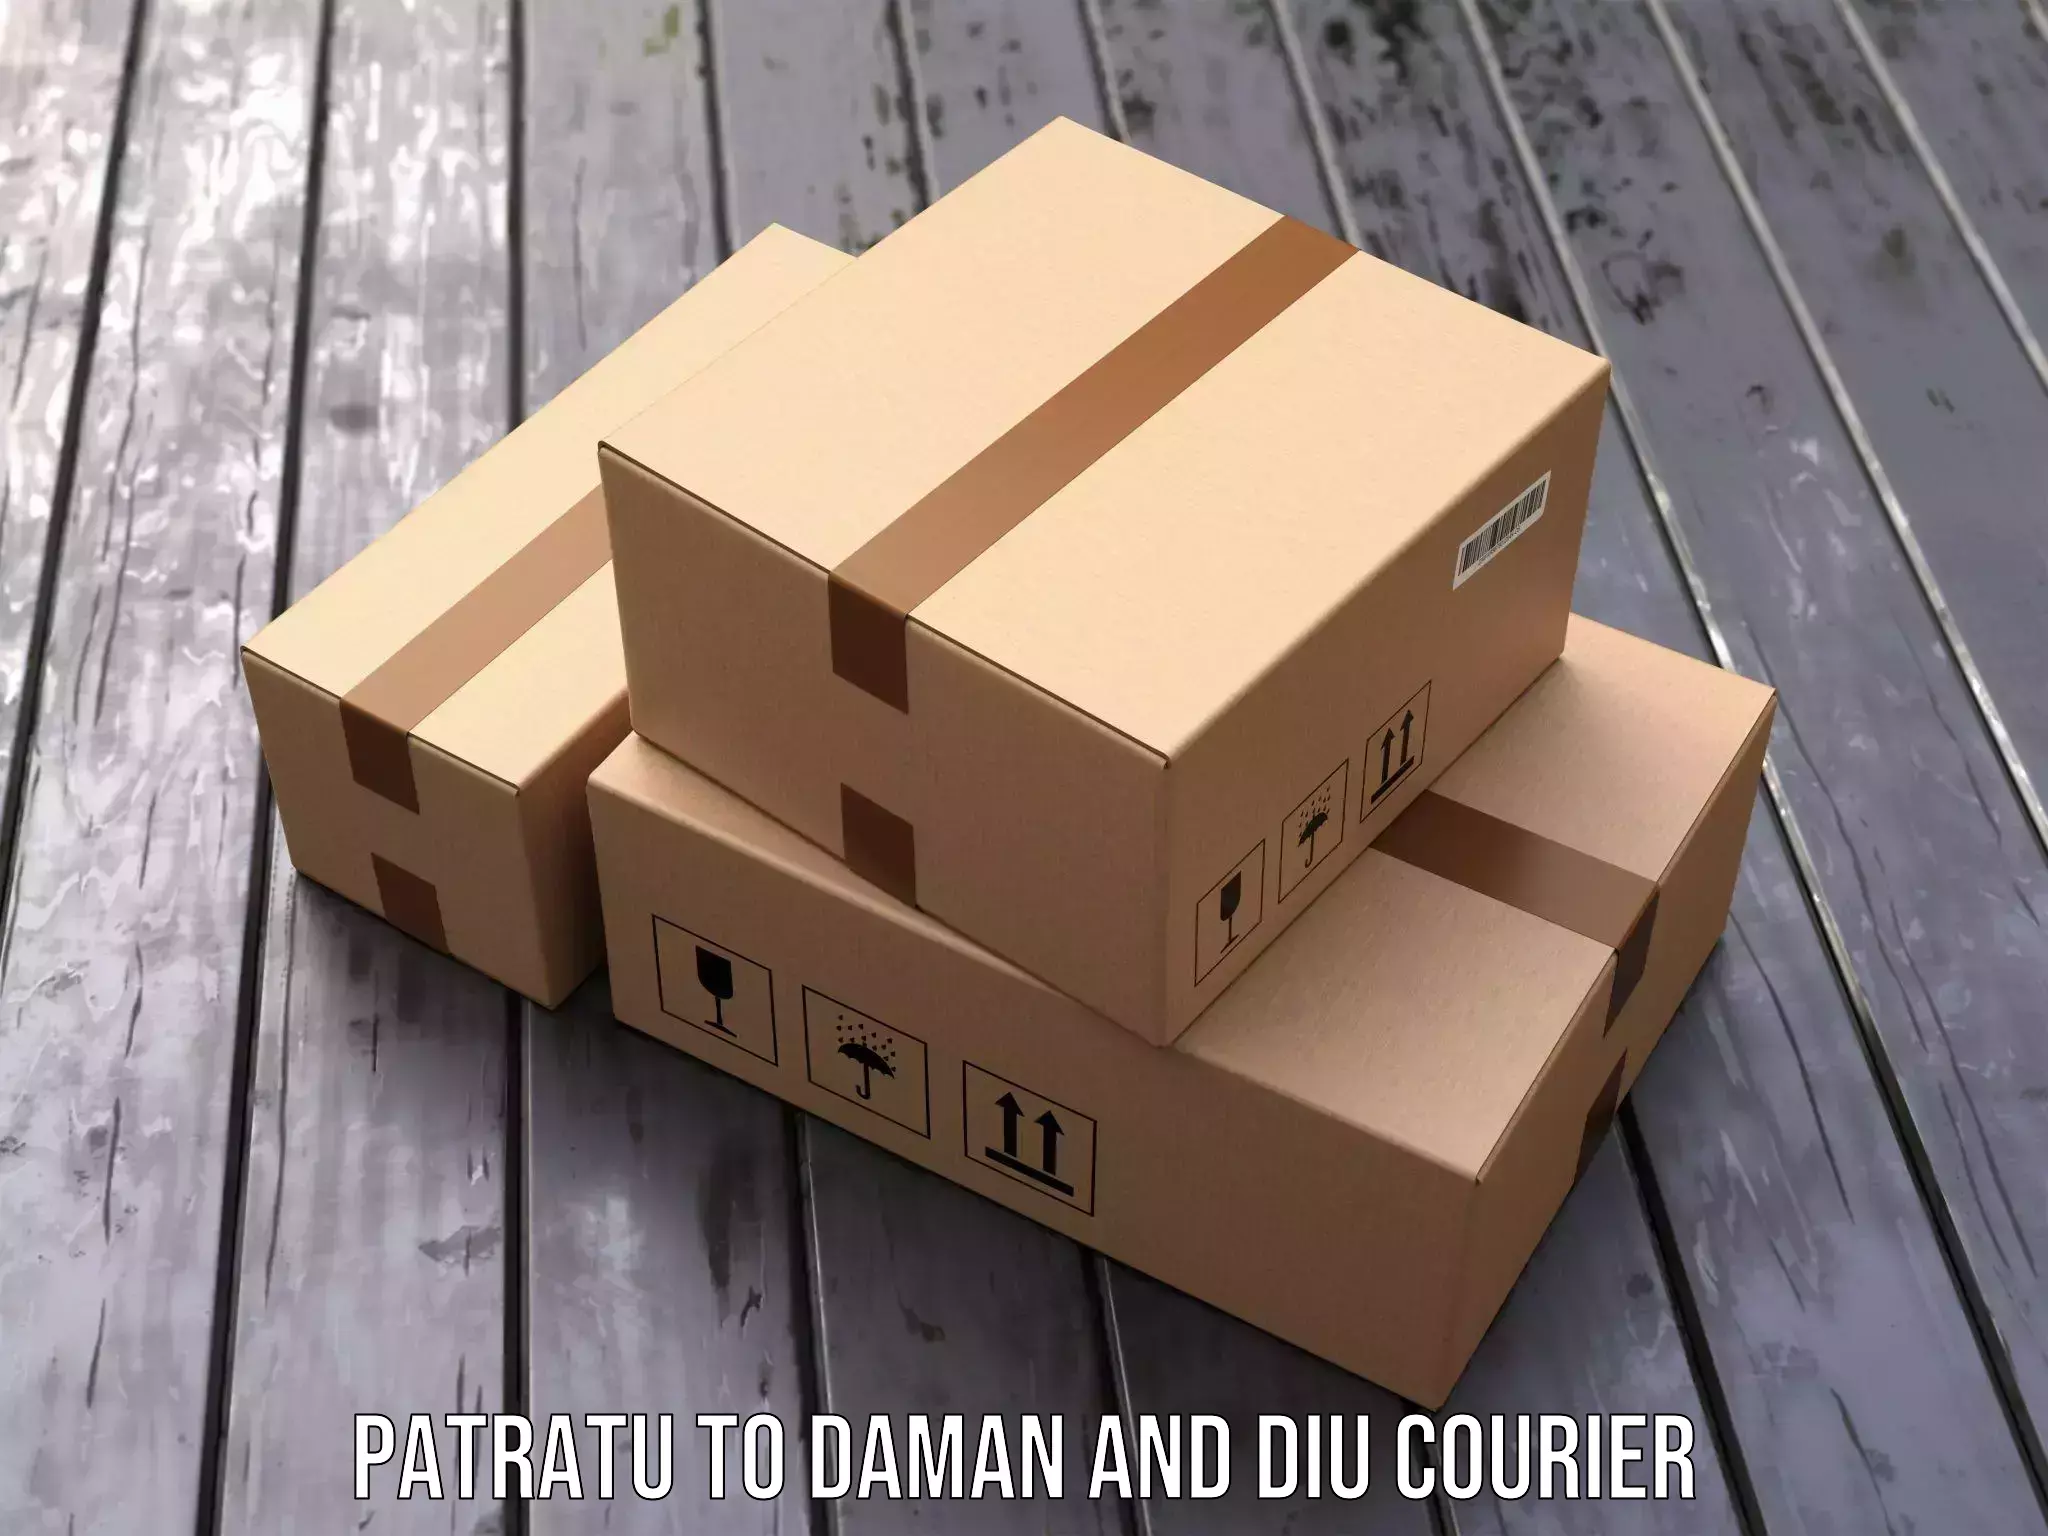 Advanced package delivery Patratu to Diu